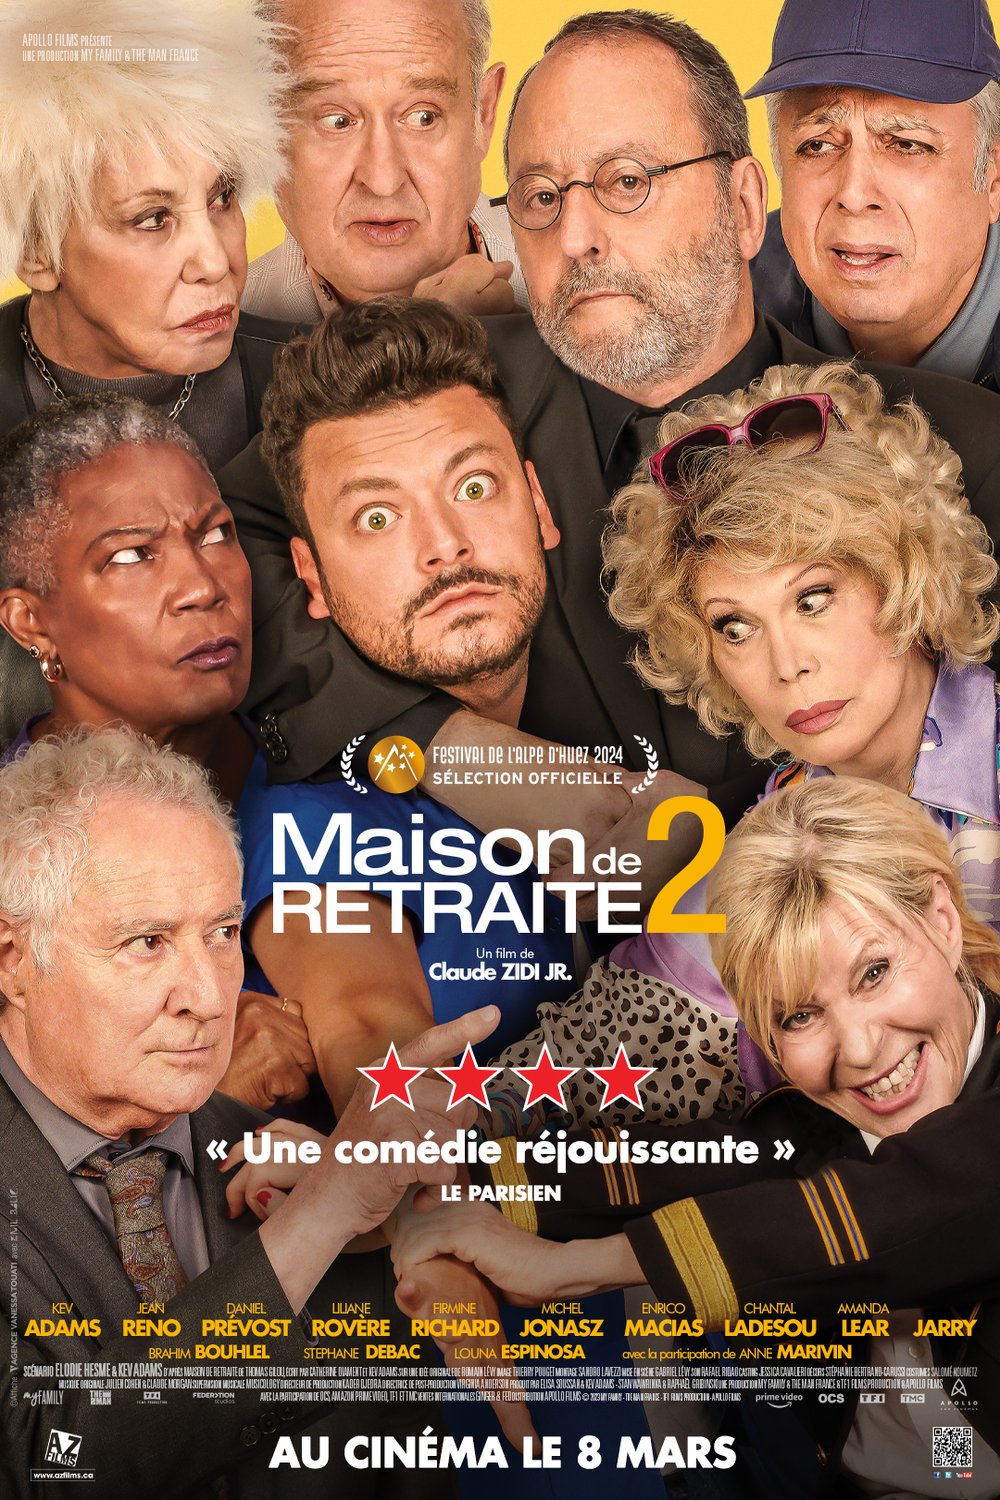 Poster of the movie Maison de retraite 2